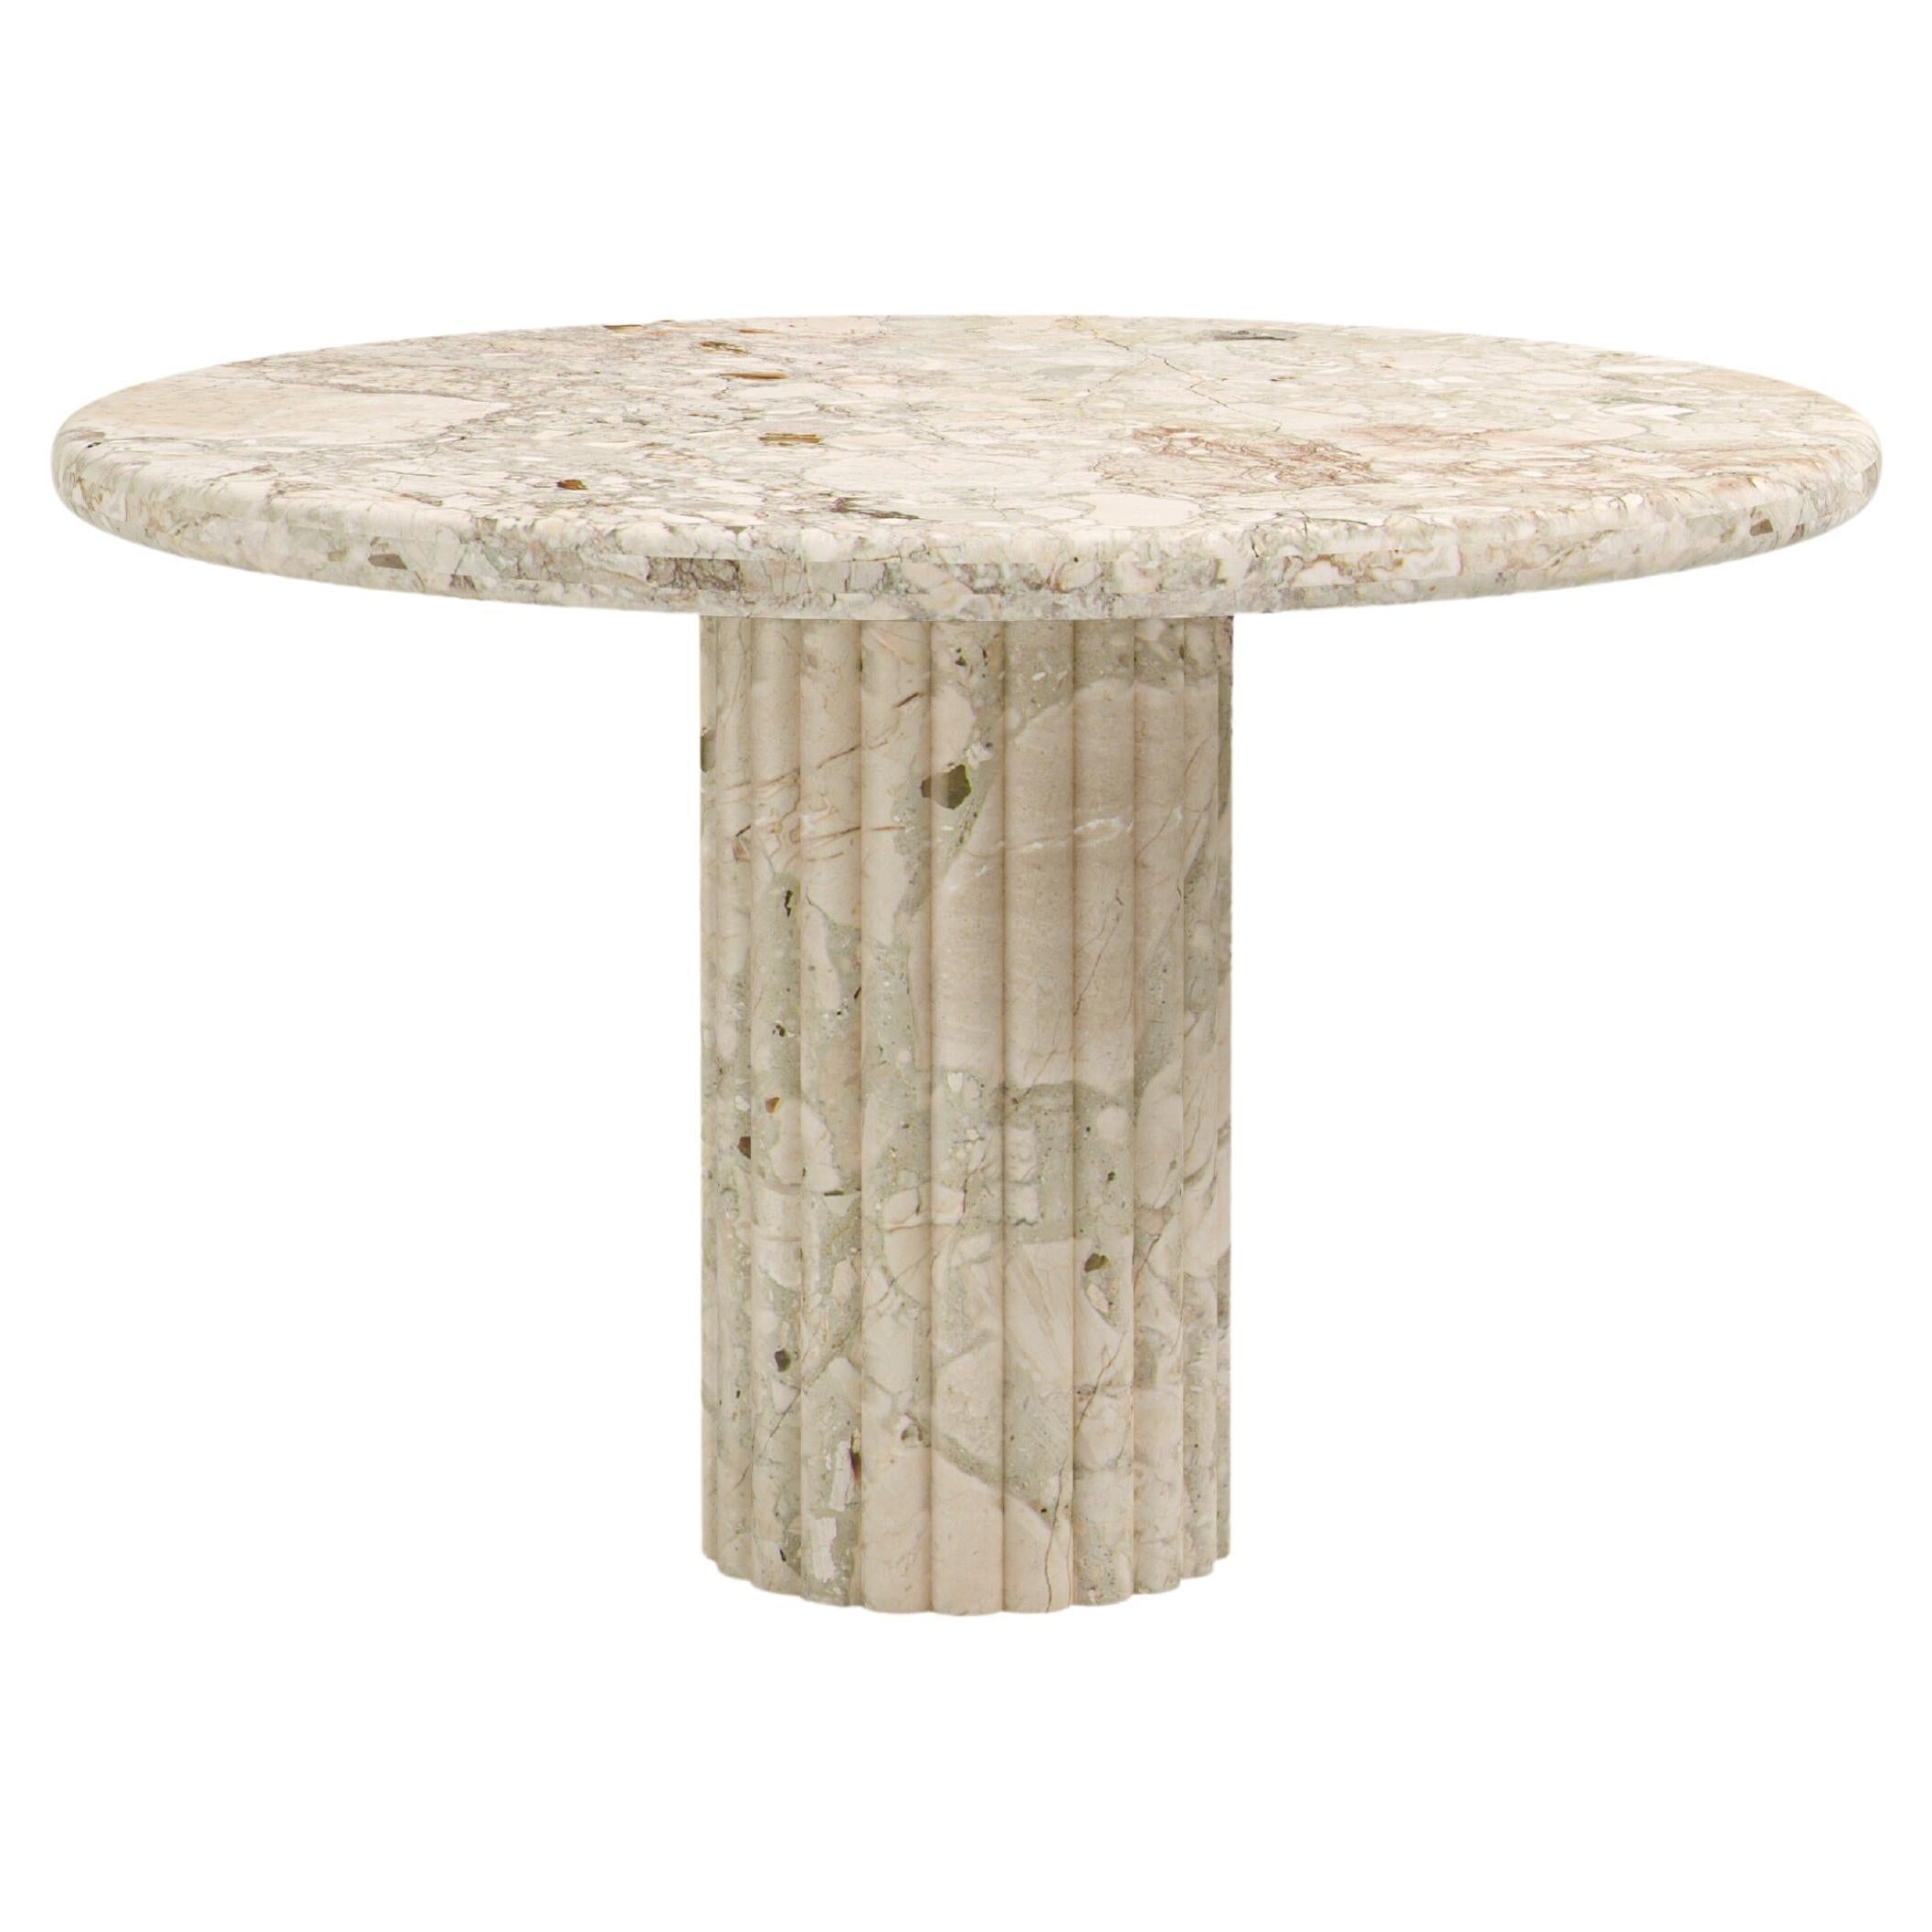 FORM(LA) Fluta Round Dining Table 60”L x 60”W x 30”H Breccia Rosa Marble